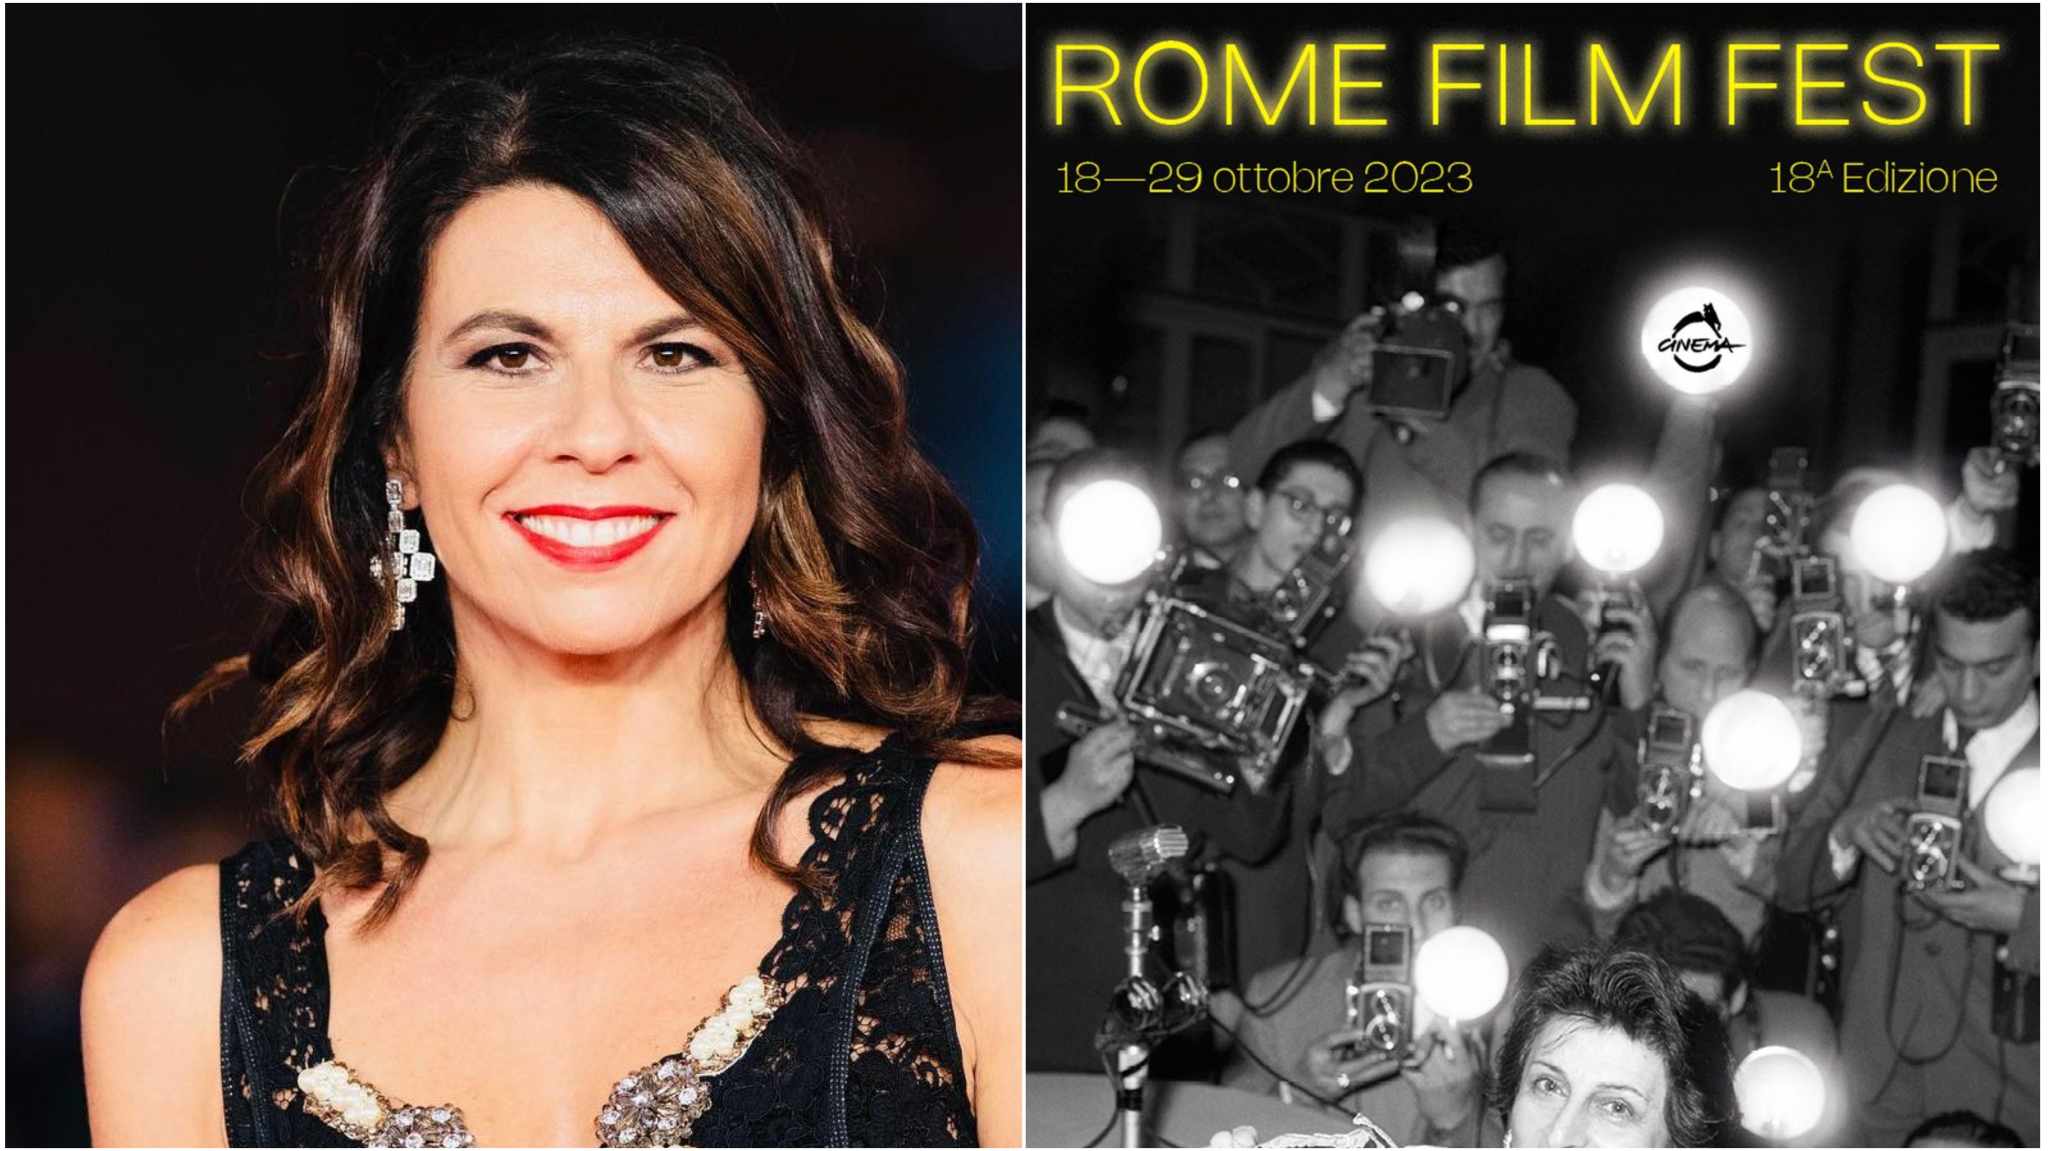 Festa del Cinema di Roma 2023: Geppi Cucciari madrina della cerimonia di chiusura